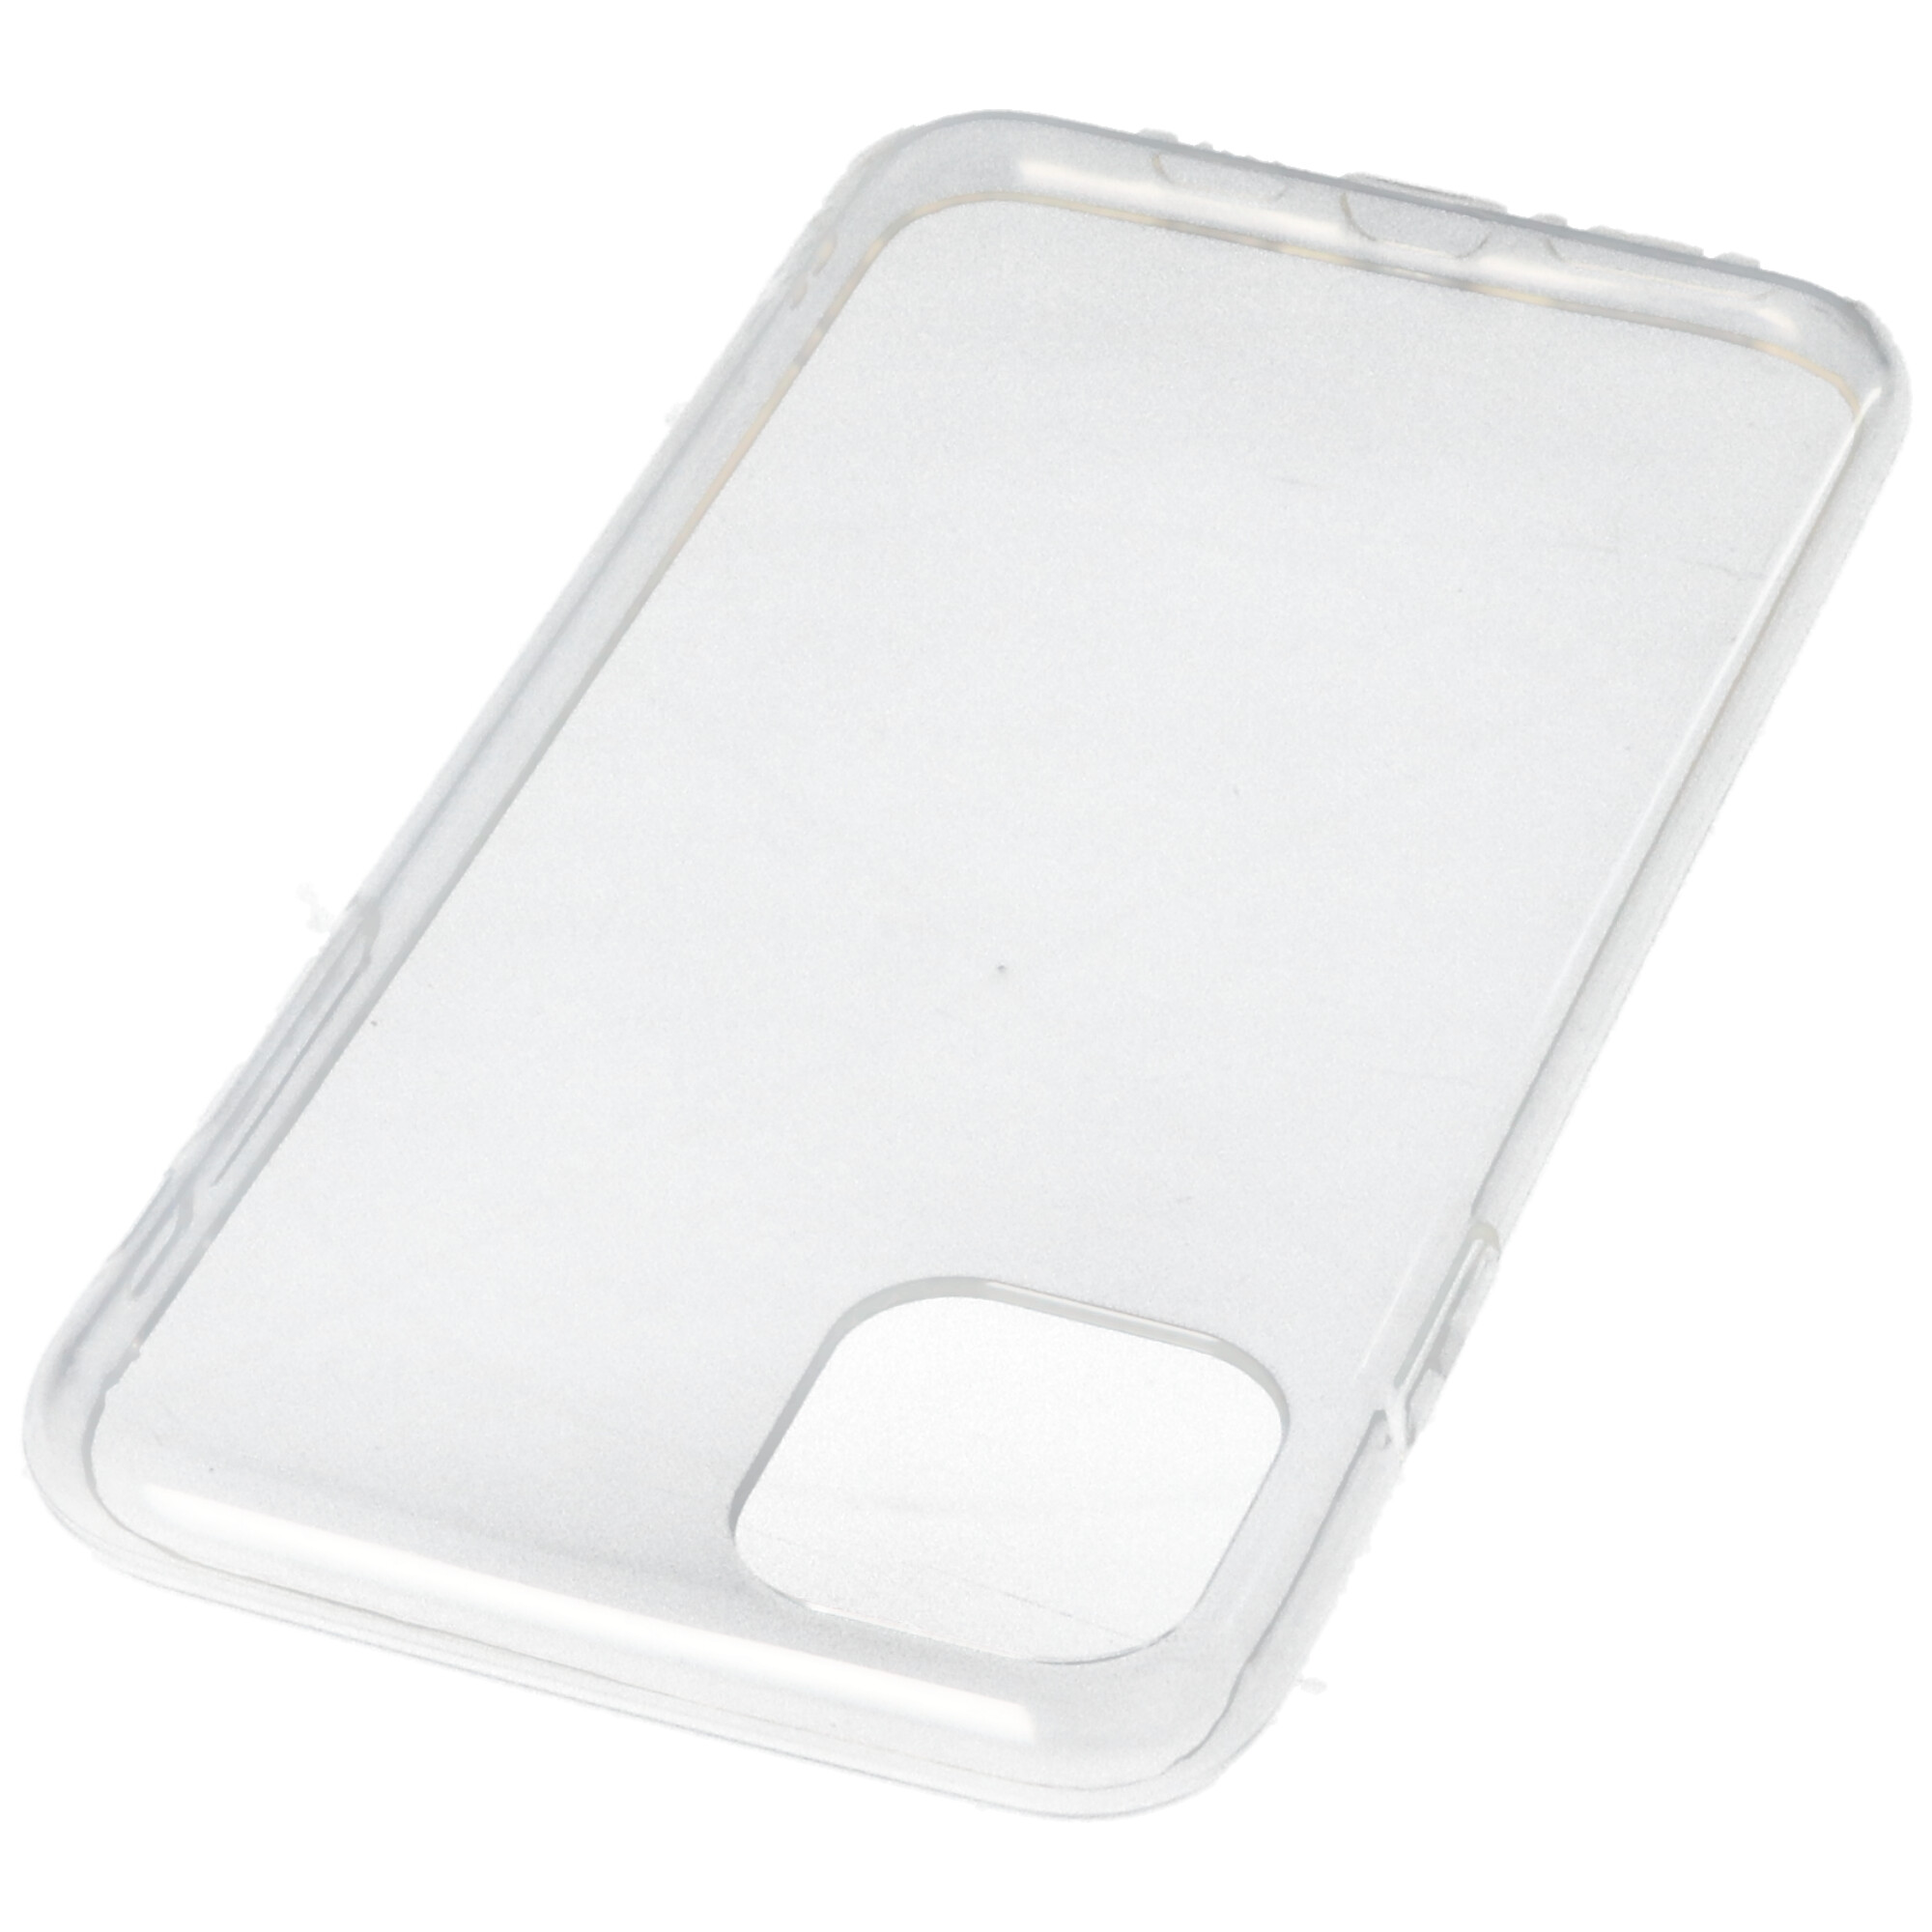 Hülle passend für Apple iPhone 11 Pro Max - transparente Schutzhülle, Anti-Gelb Luftkissen Fallschutz Silikon Handyhülle robustes TPU Case